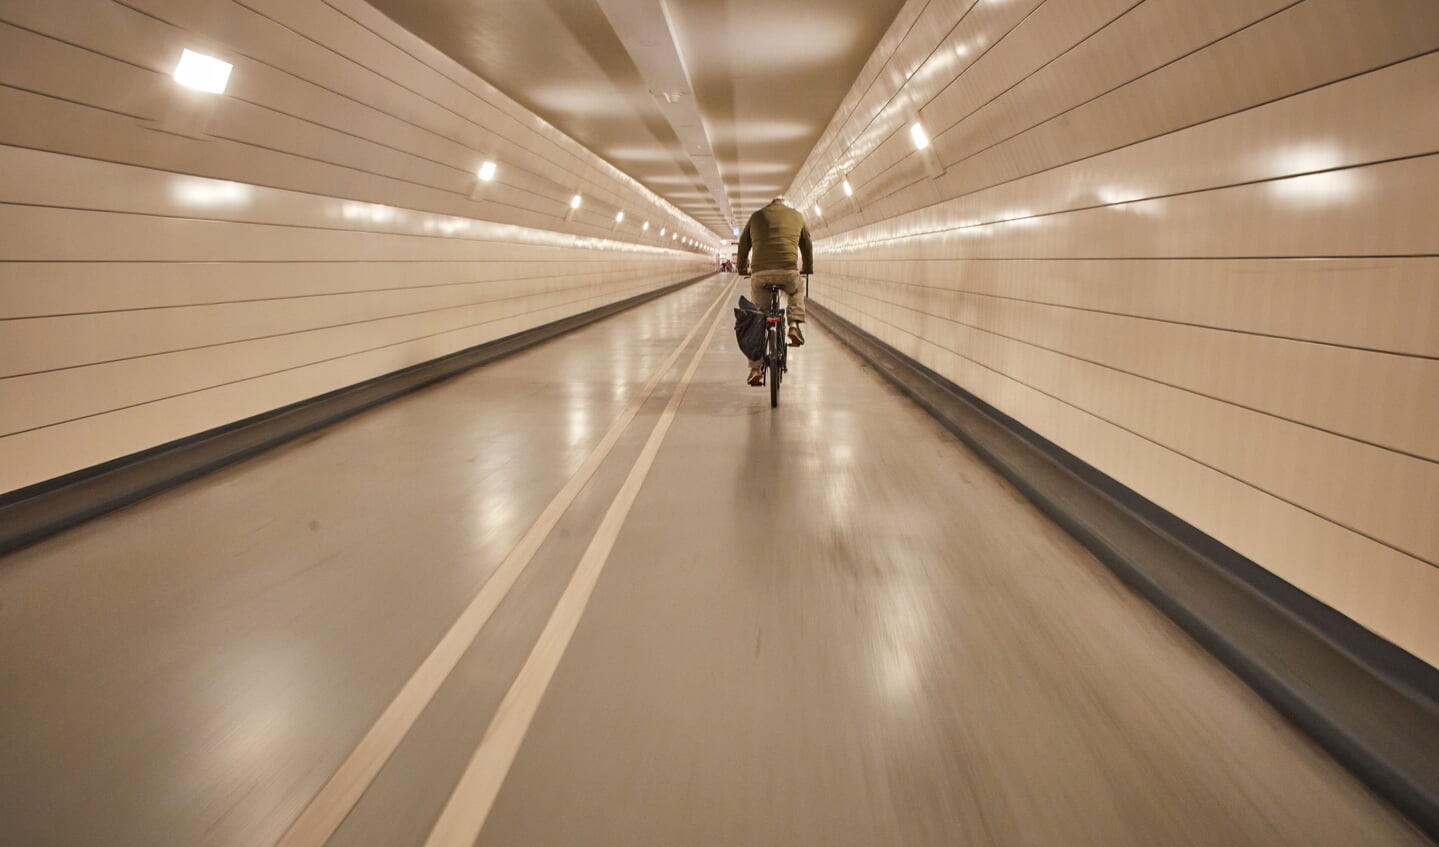 Maastunnel: werkzaamheden in de fietstunnel. In de tweede fase wordt de volledige fietstunnel aangepakt en is deze twee weken lang niet beschikbaar. Foto: Jan de Groen